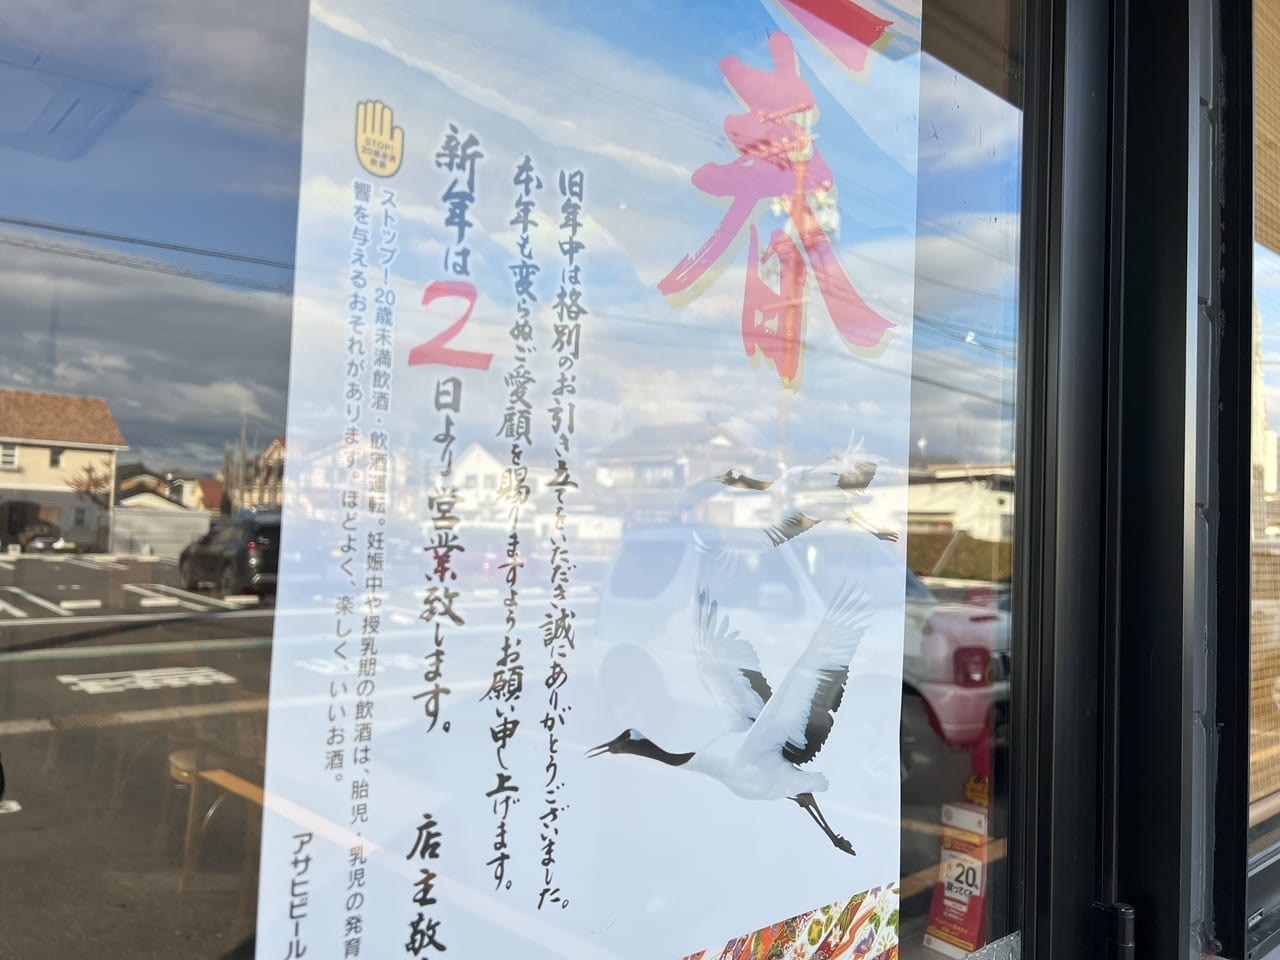 「塩麺 丸申商店」新年営業